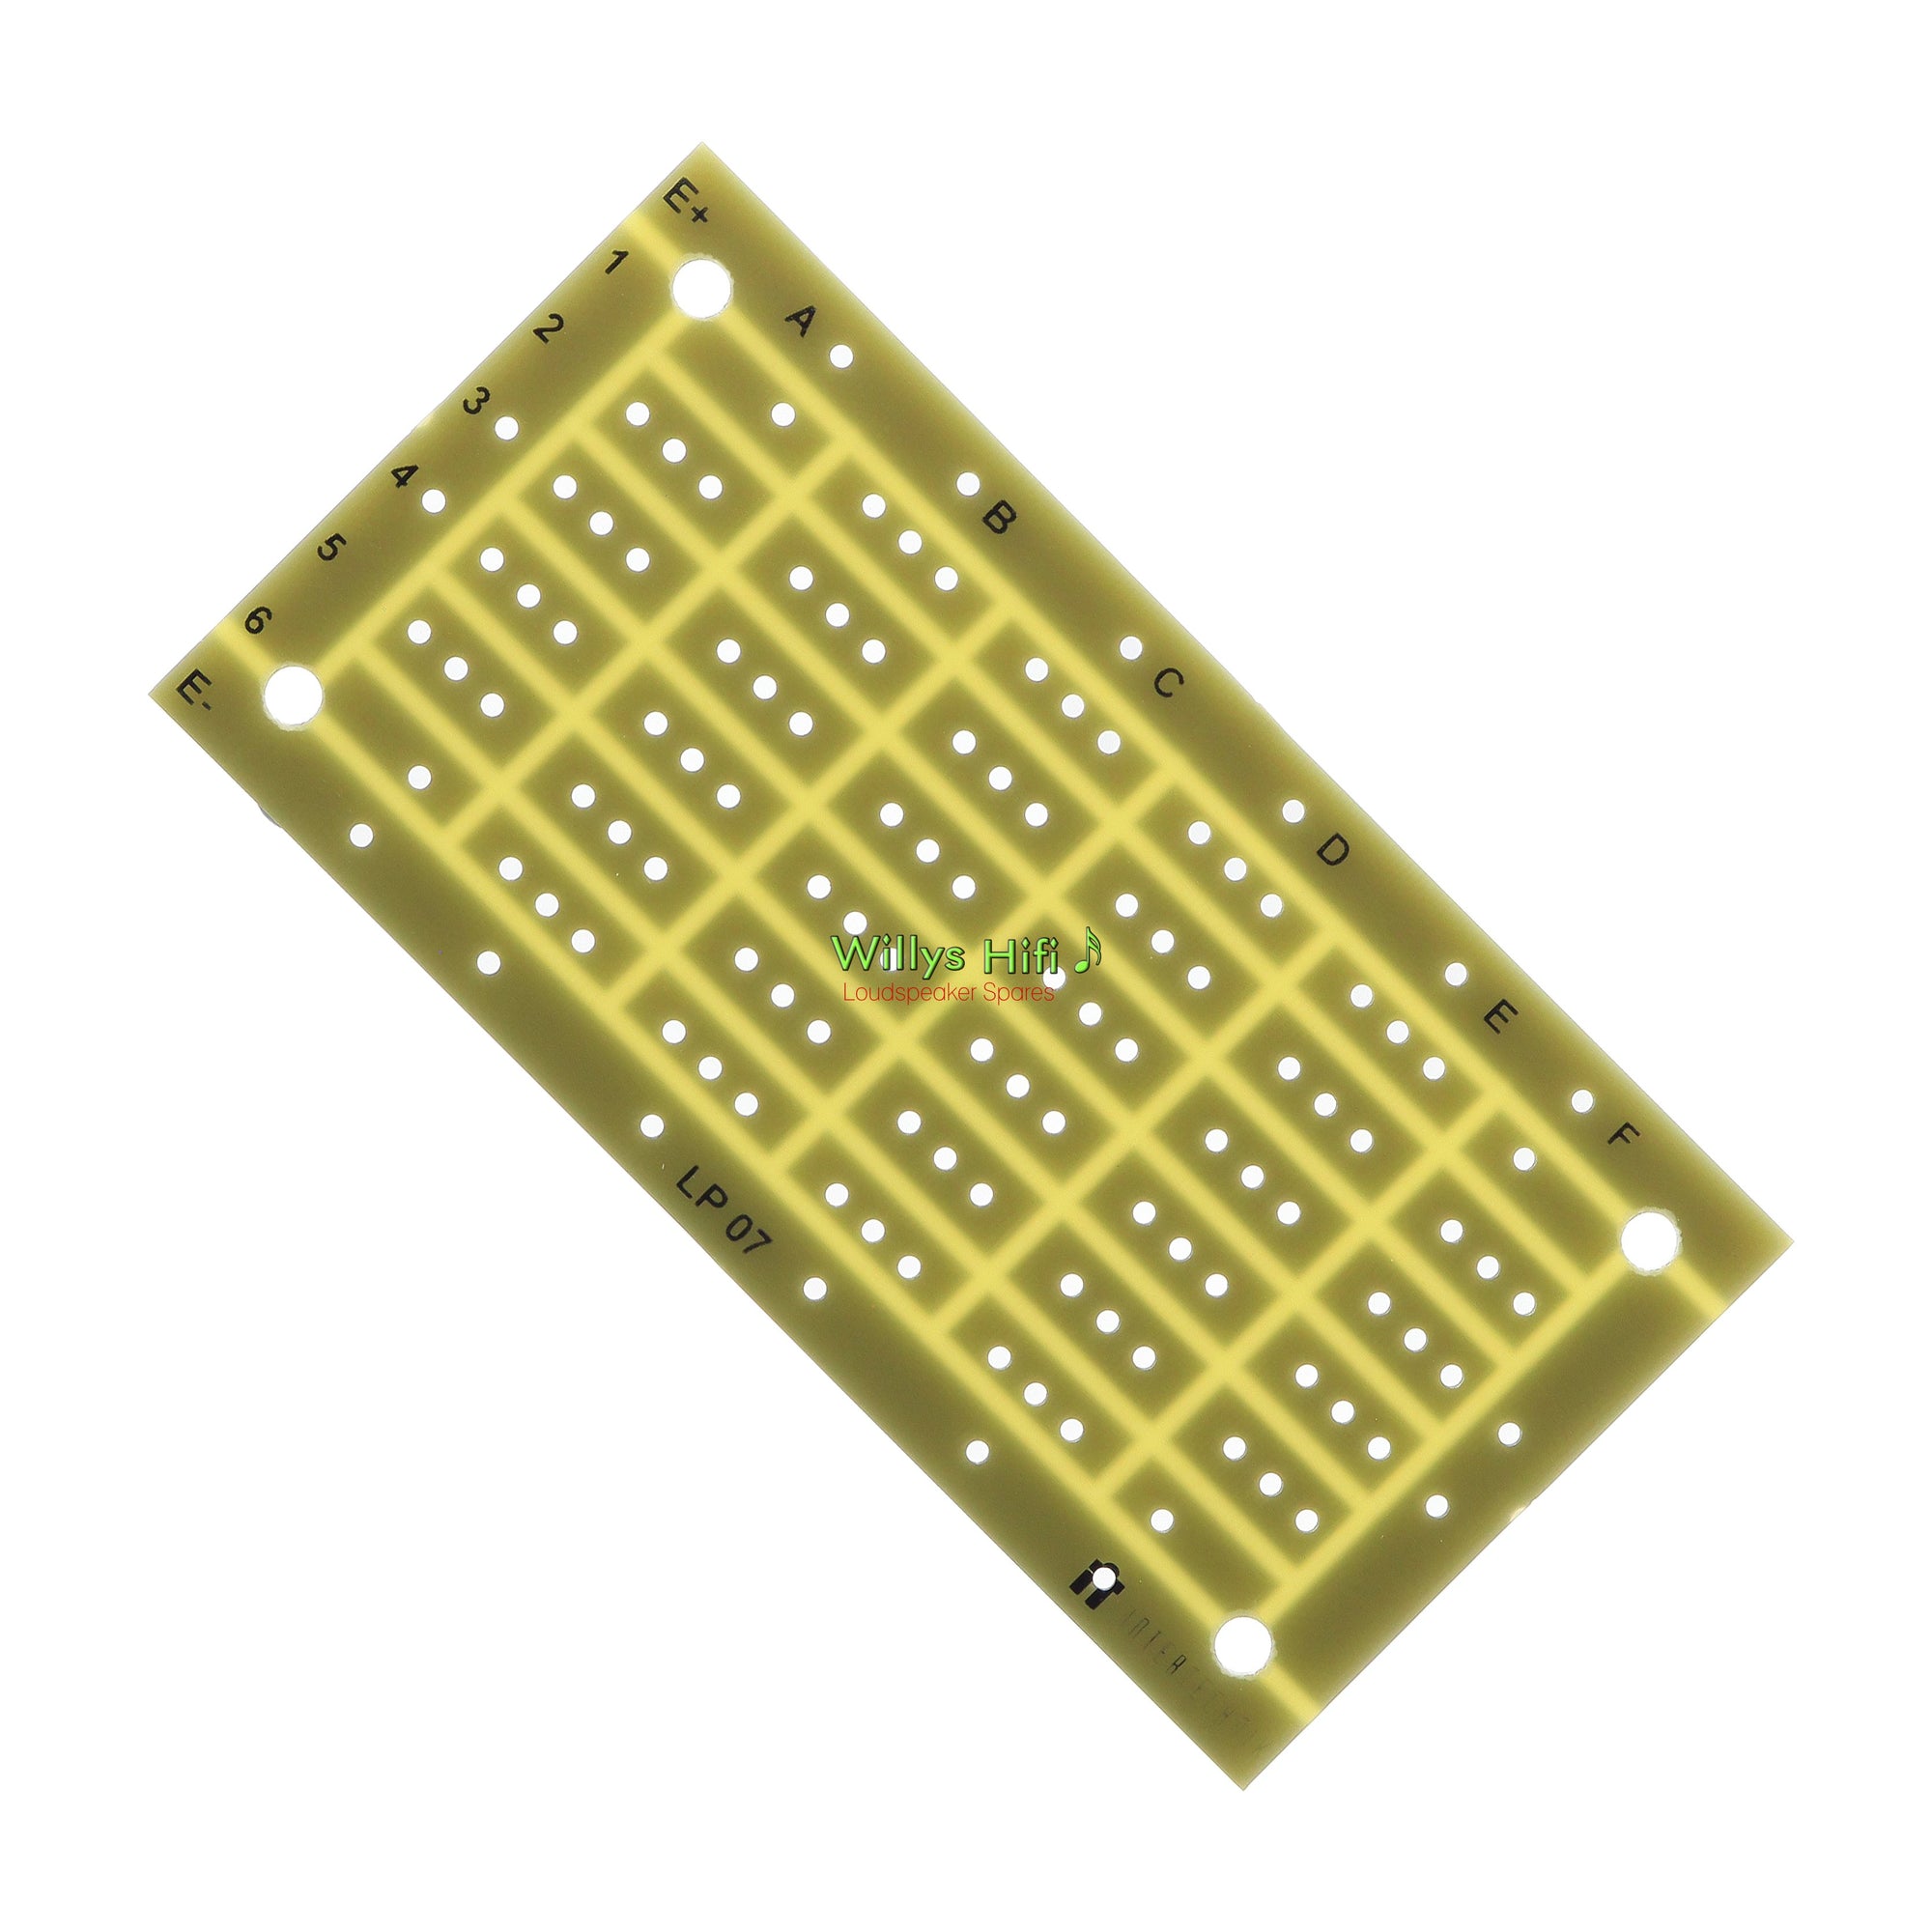 Intertechnik Crossover Development Circuit Board 1342756 - small.